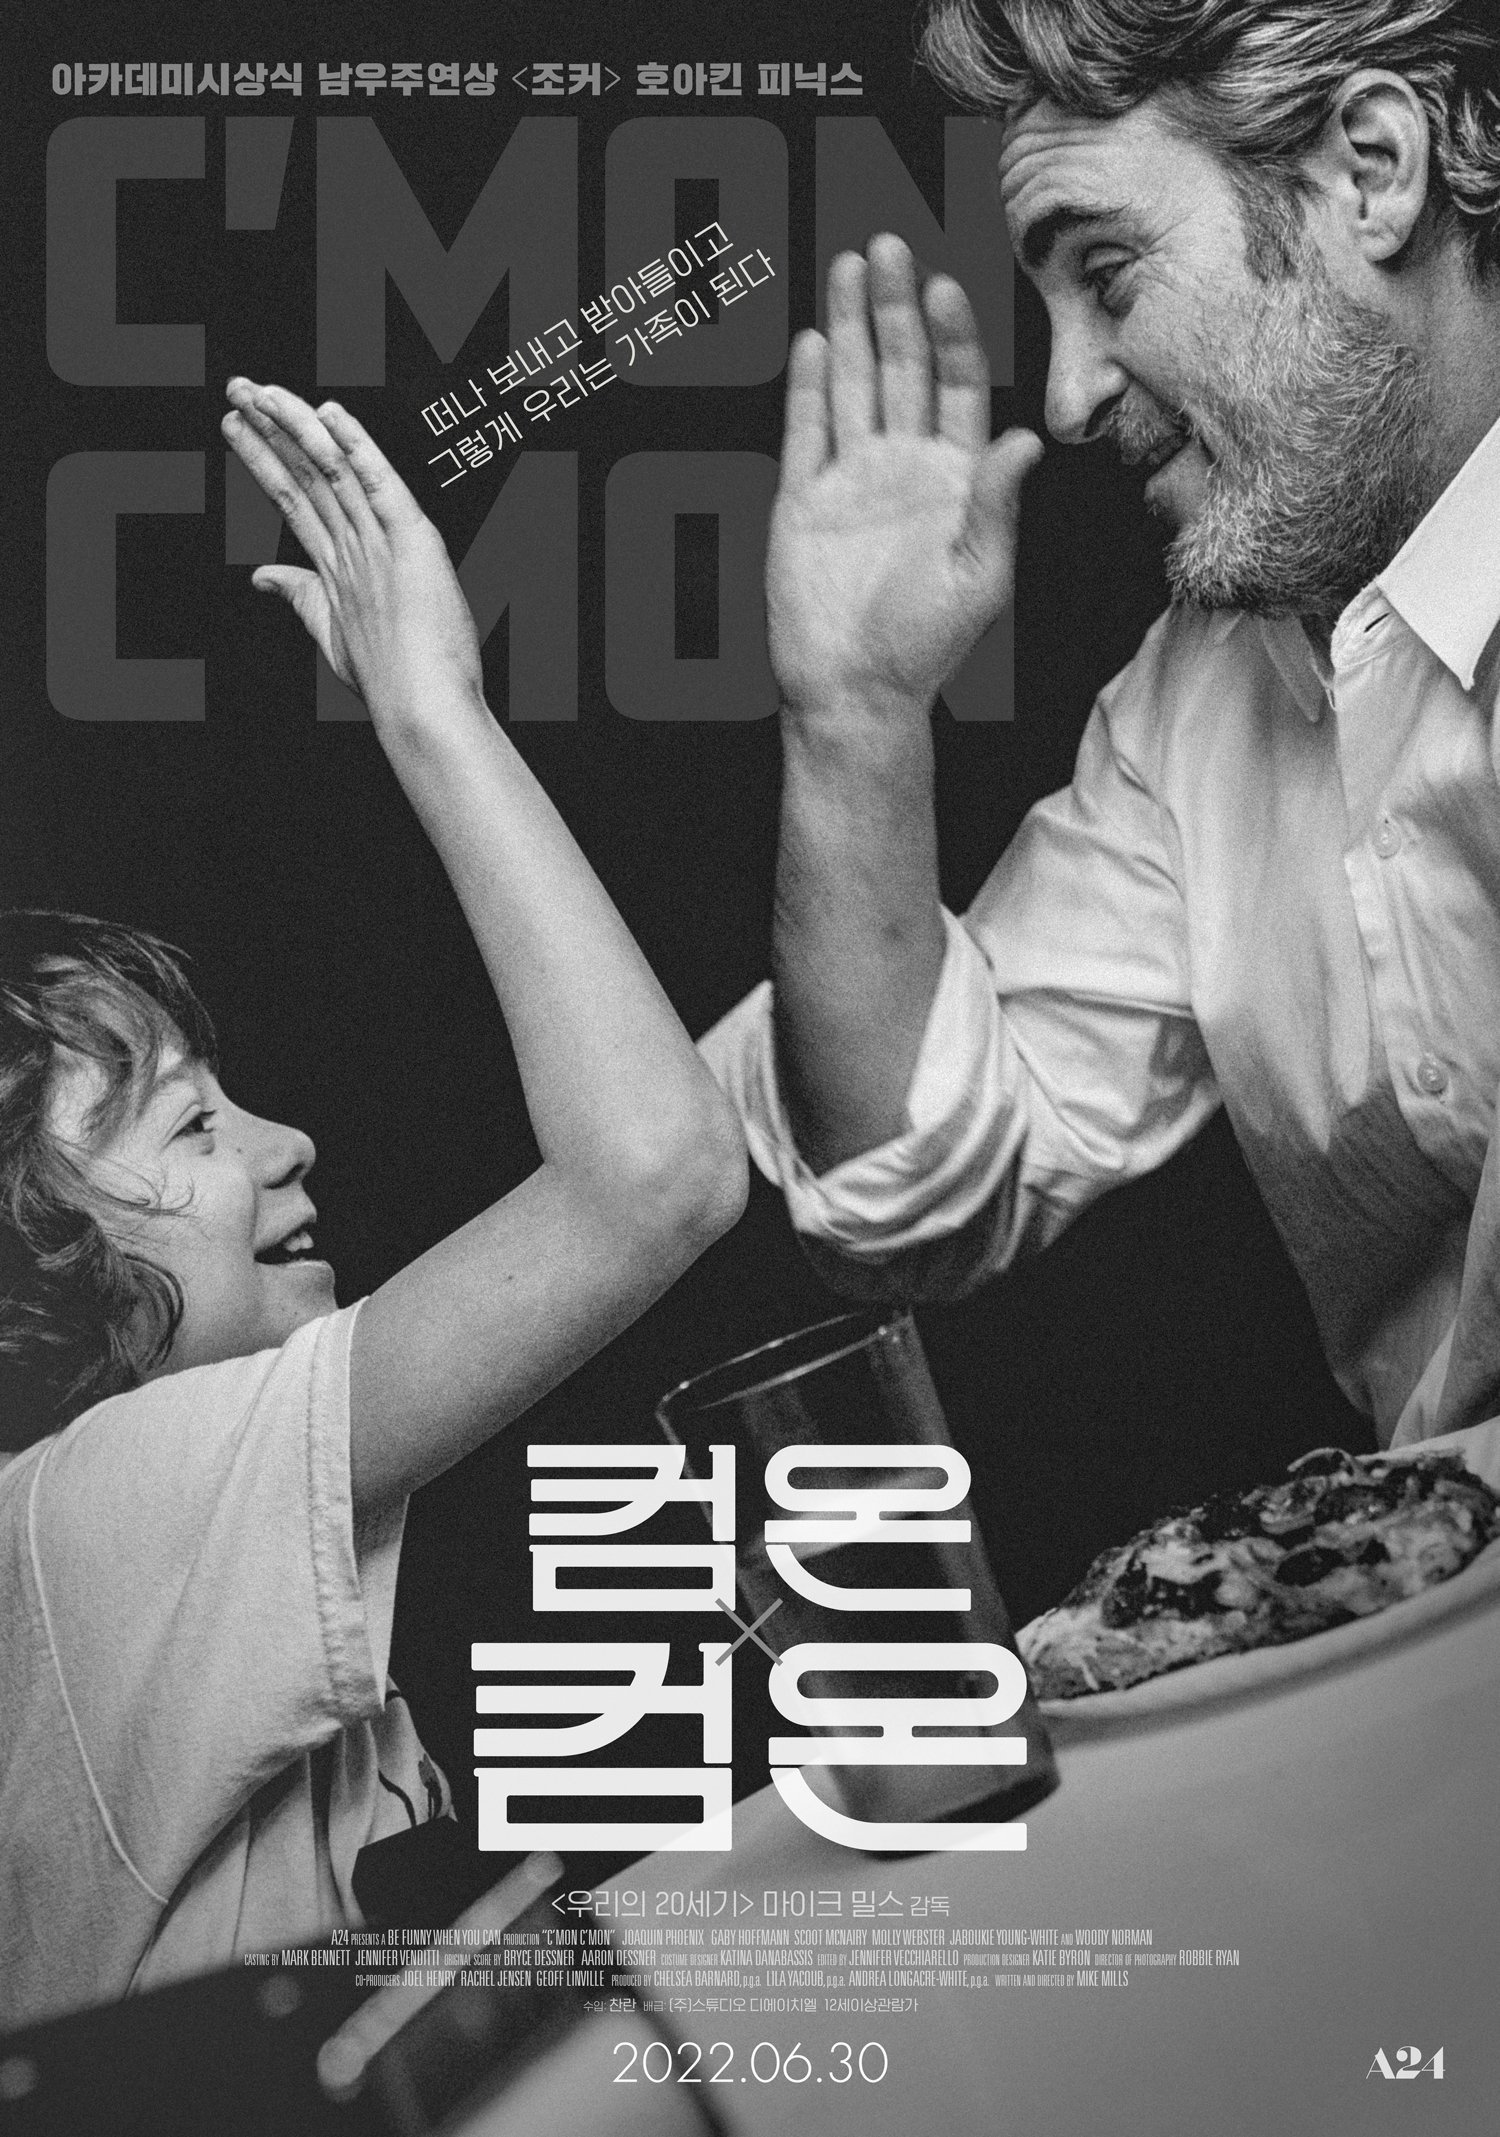 호아킨 피닉스 필모그래피 작품활동 평점 높은 영화 추천 TOP 5